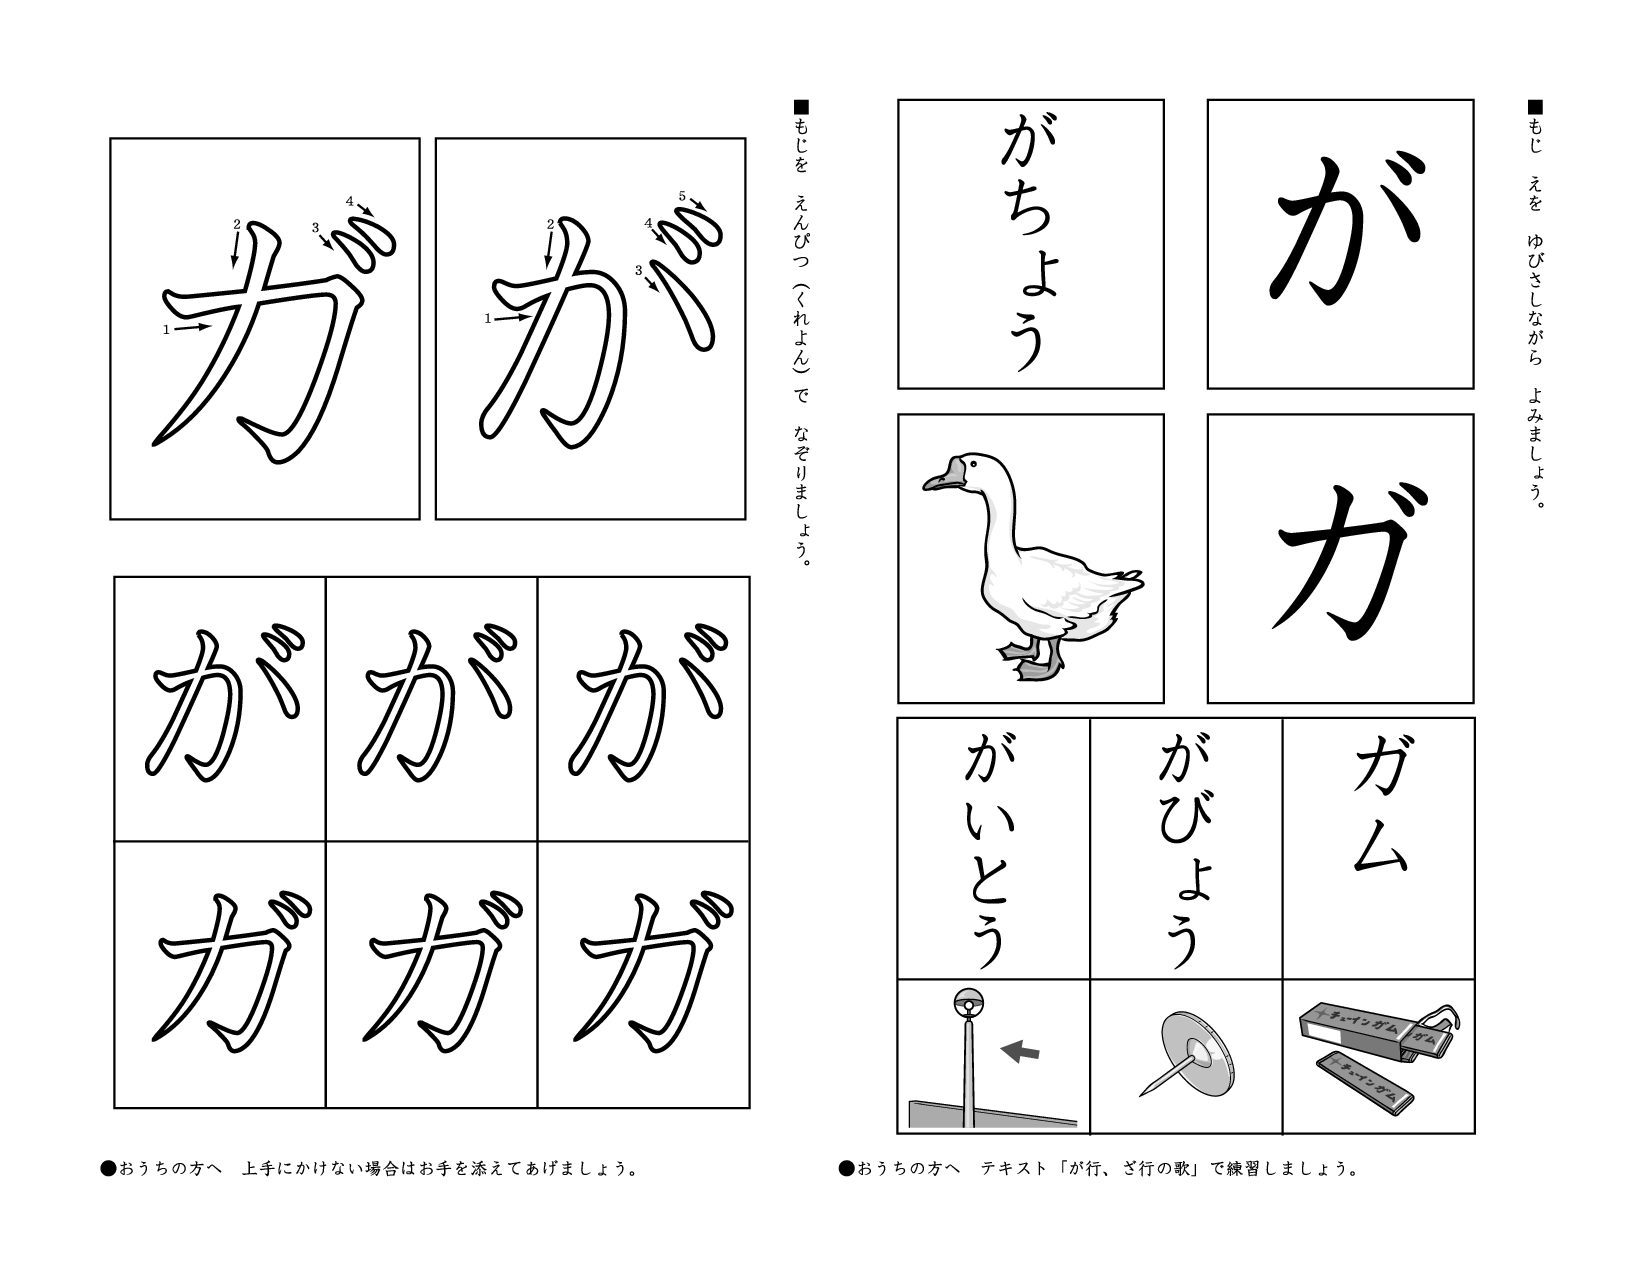 Japanese Hiragana Practice Sheets Image